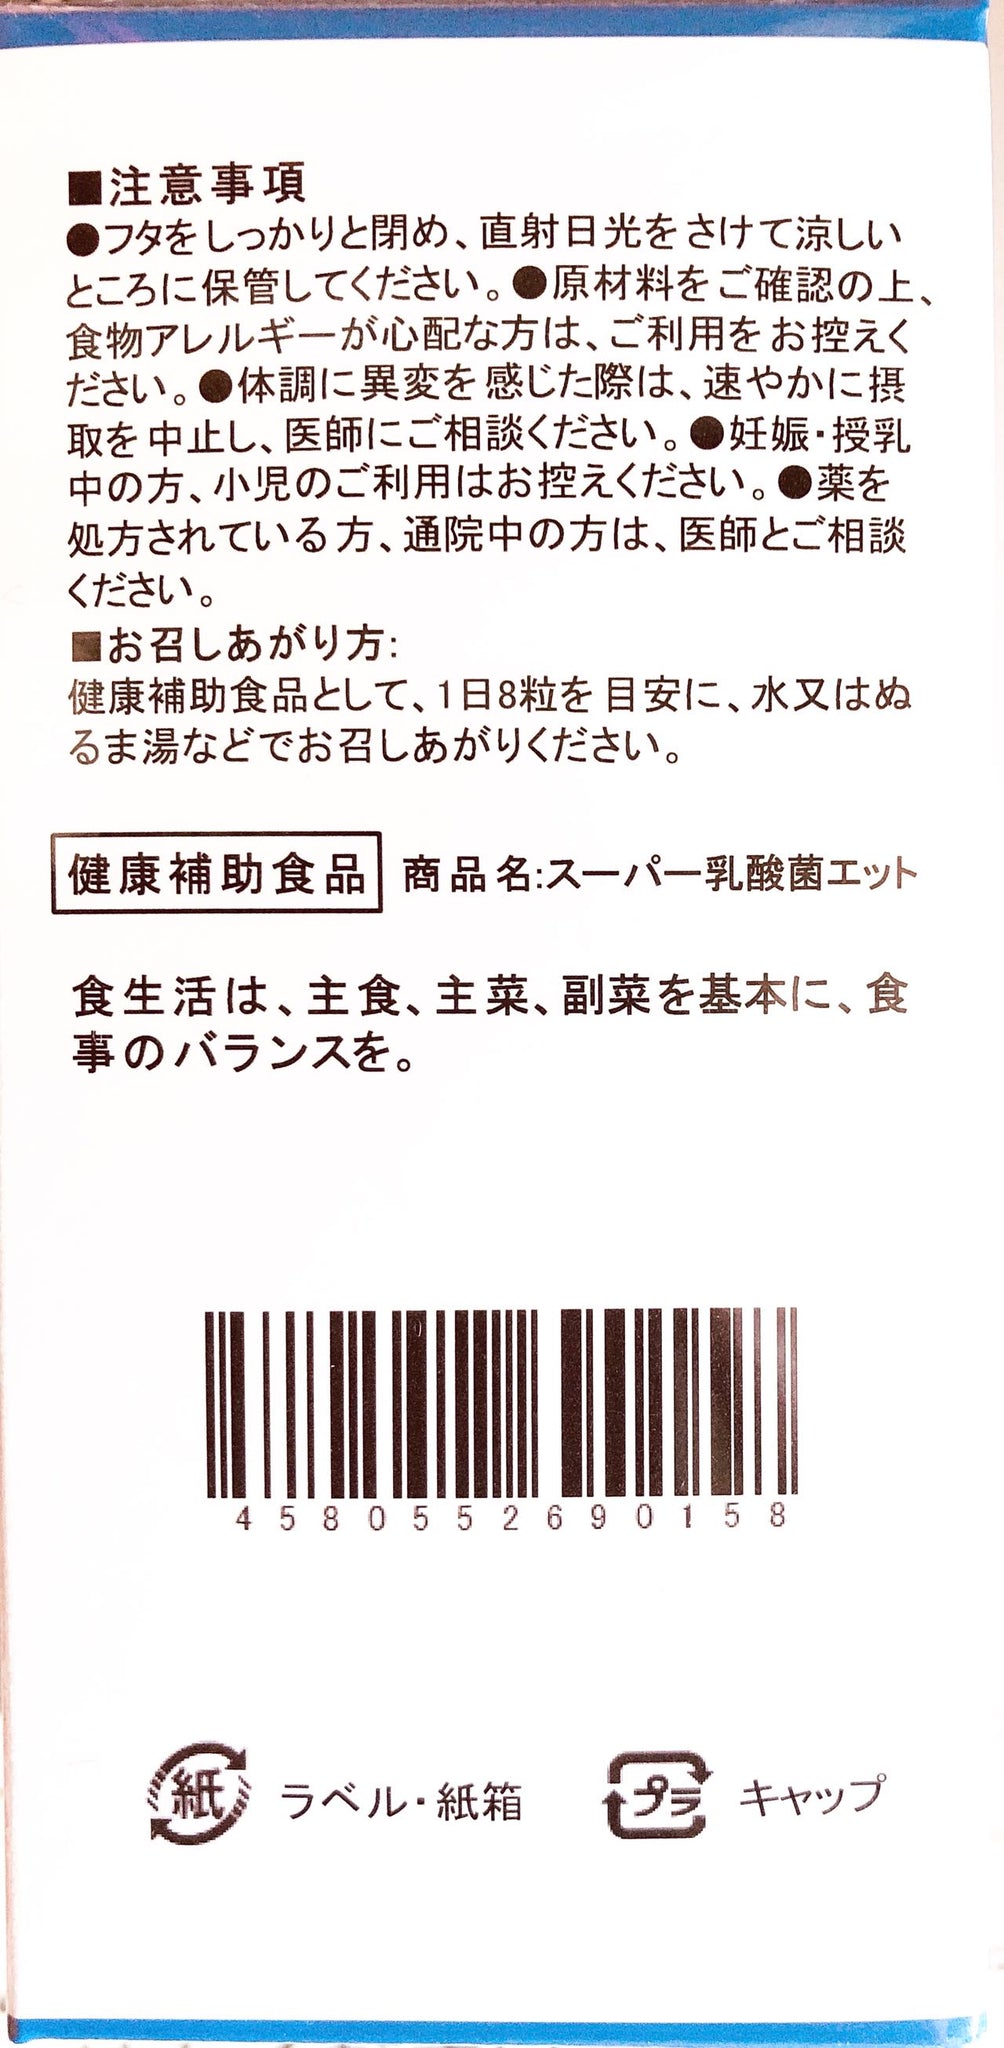 八念堂Ⓡ スーパー乳酸菌ET (ダイエットサプリ)120粒